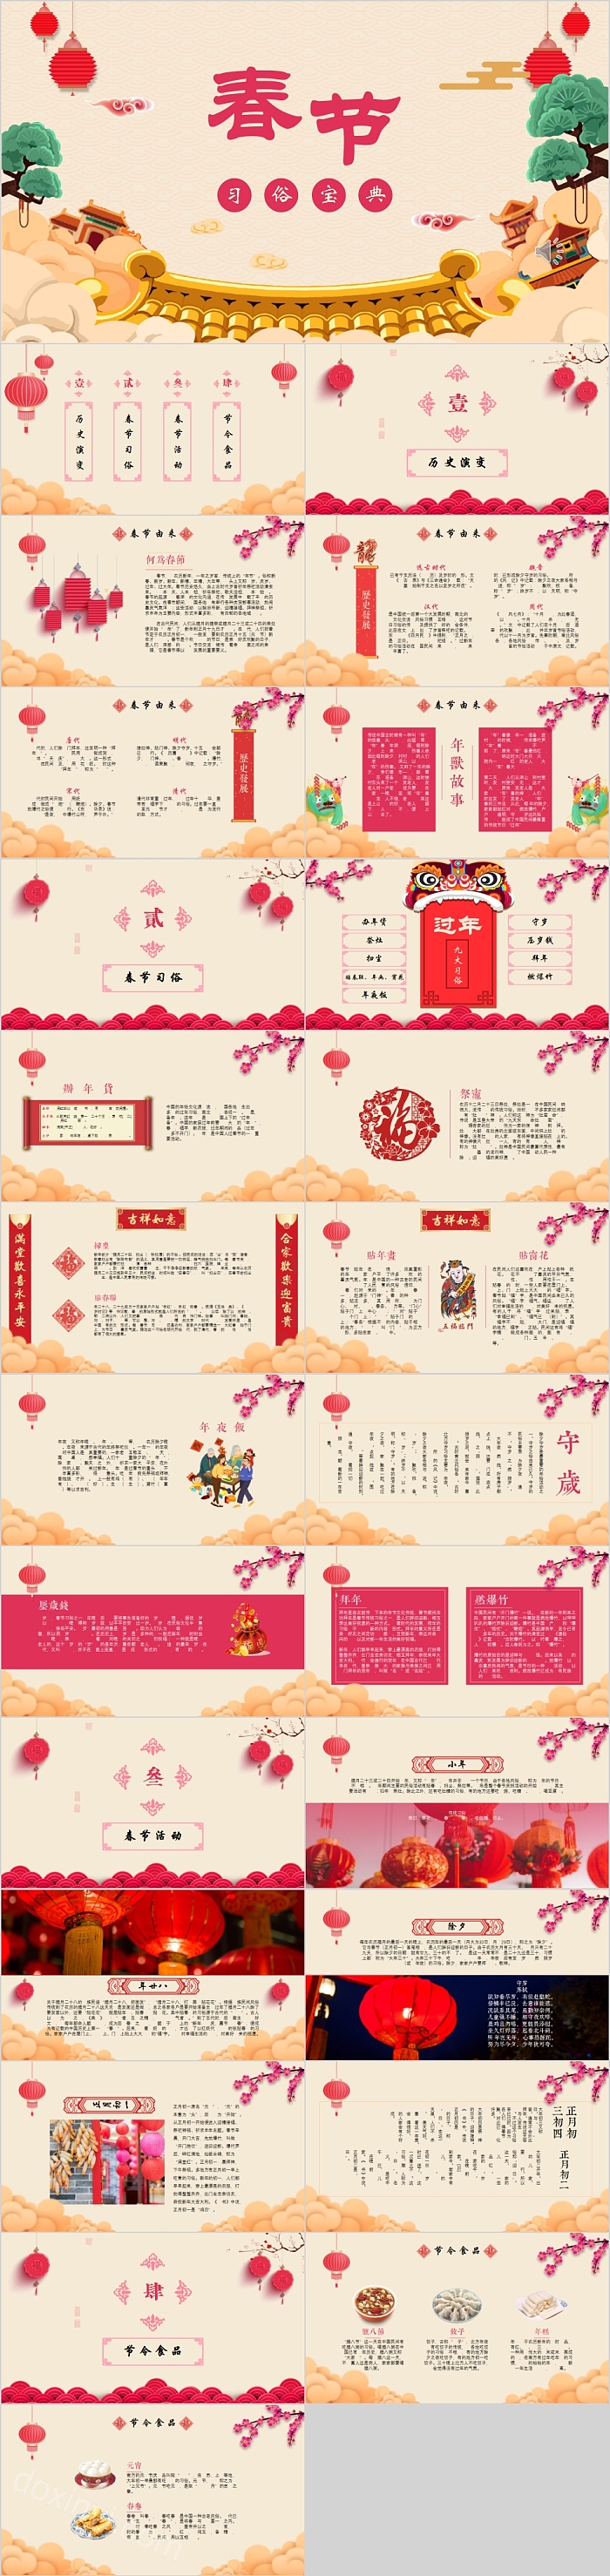 传统文化介绍春节习俗宝典PPT模板